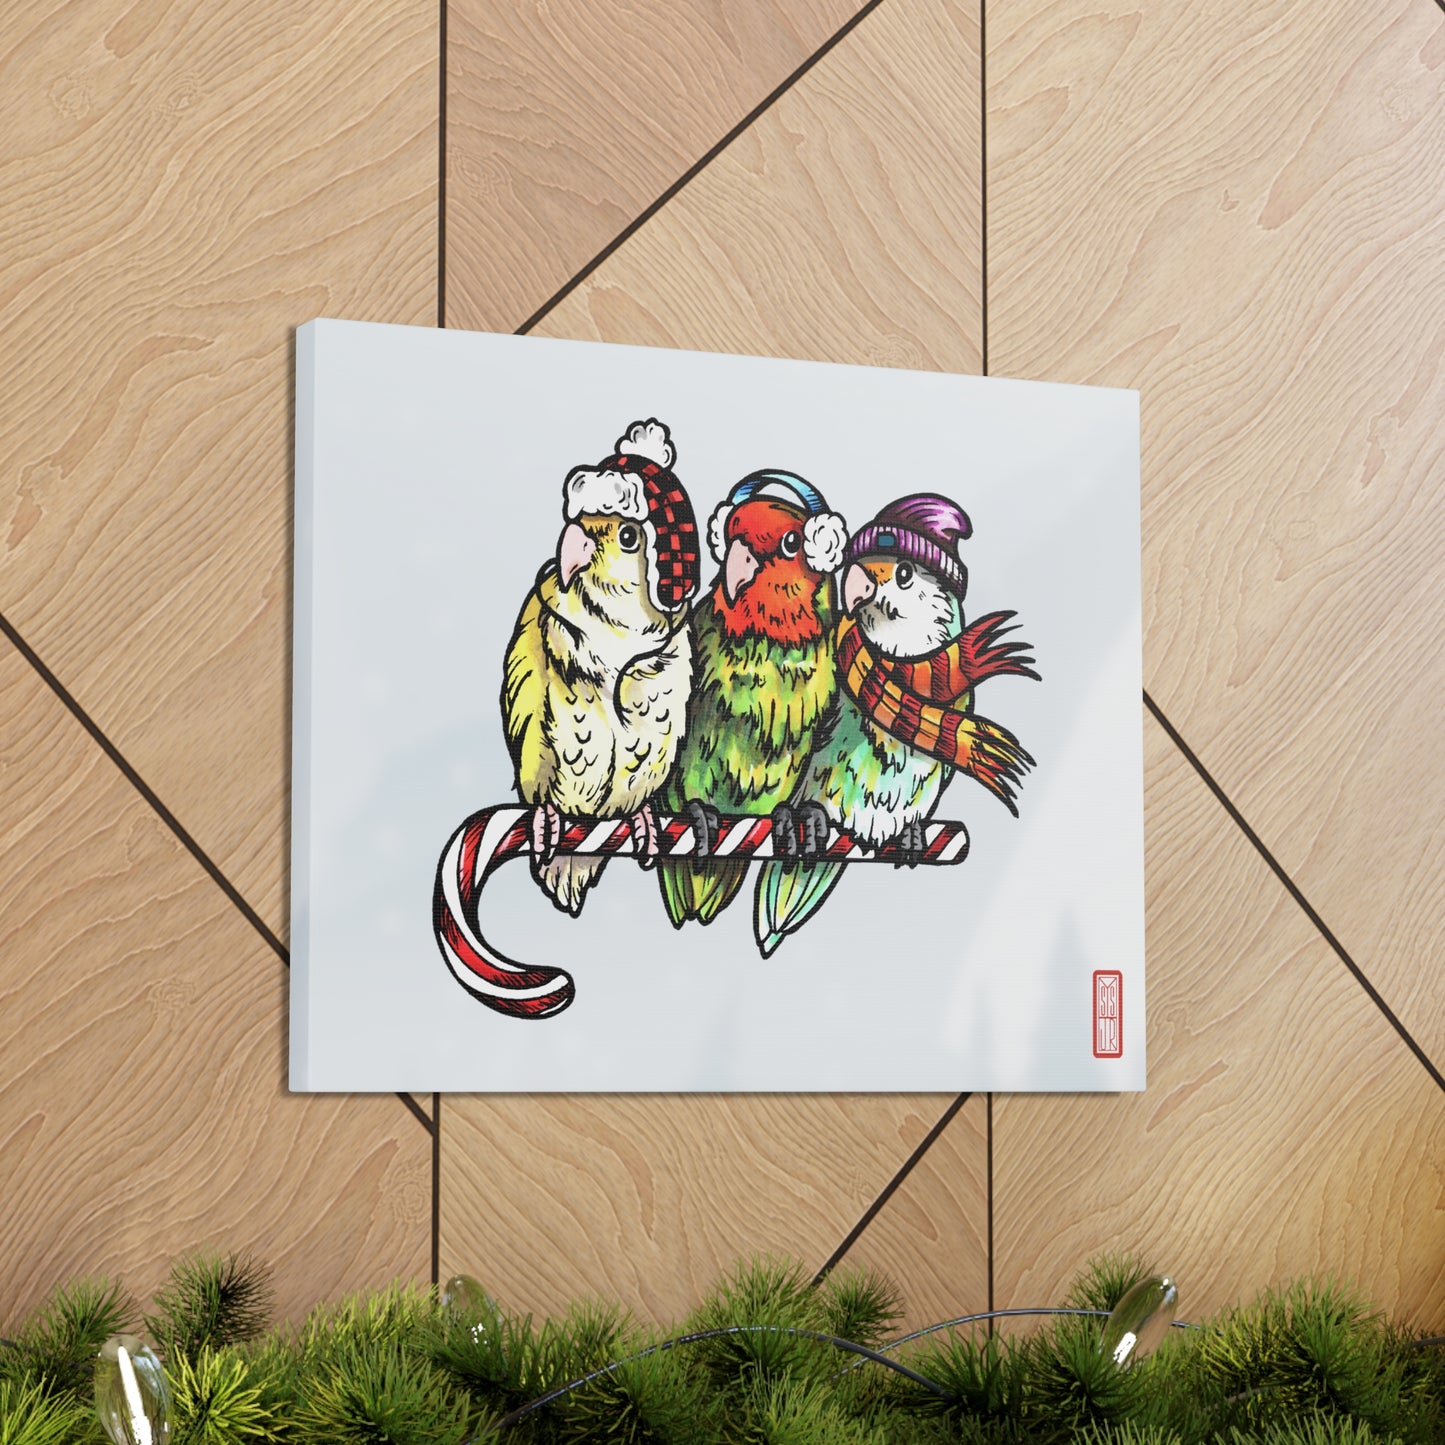 3 tourtereaux avec vêtements d’hiver et perchés sur une canne en bonbon, art mural sur toile